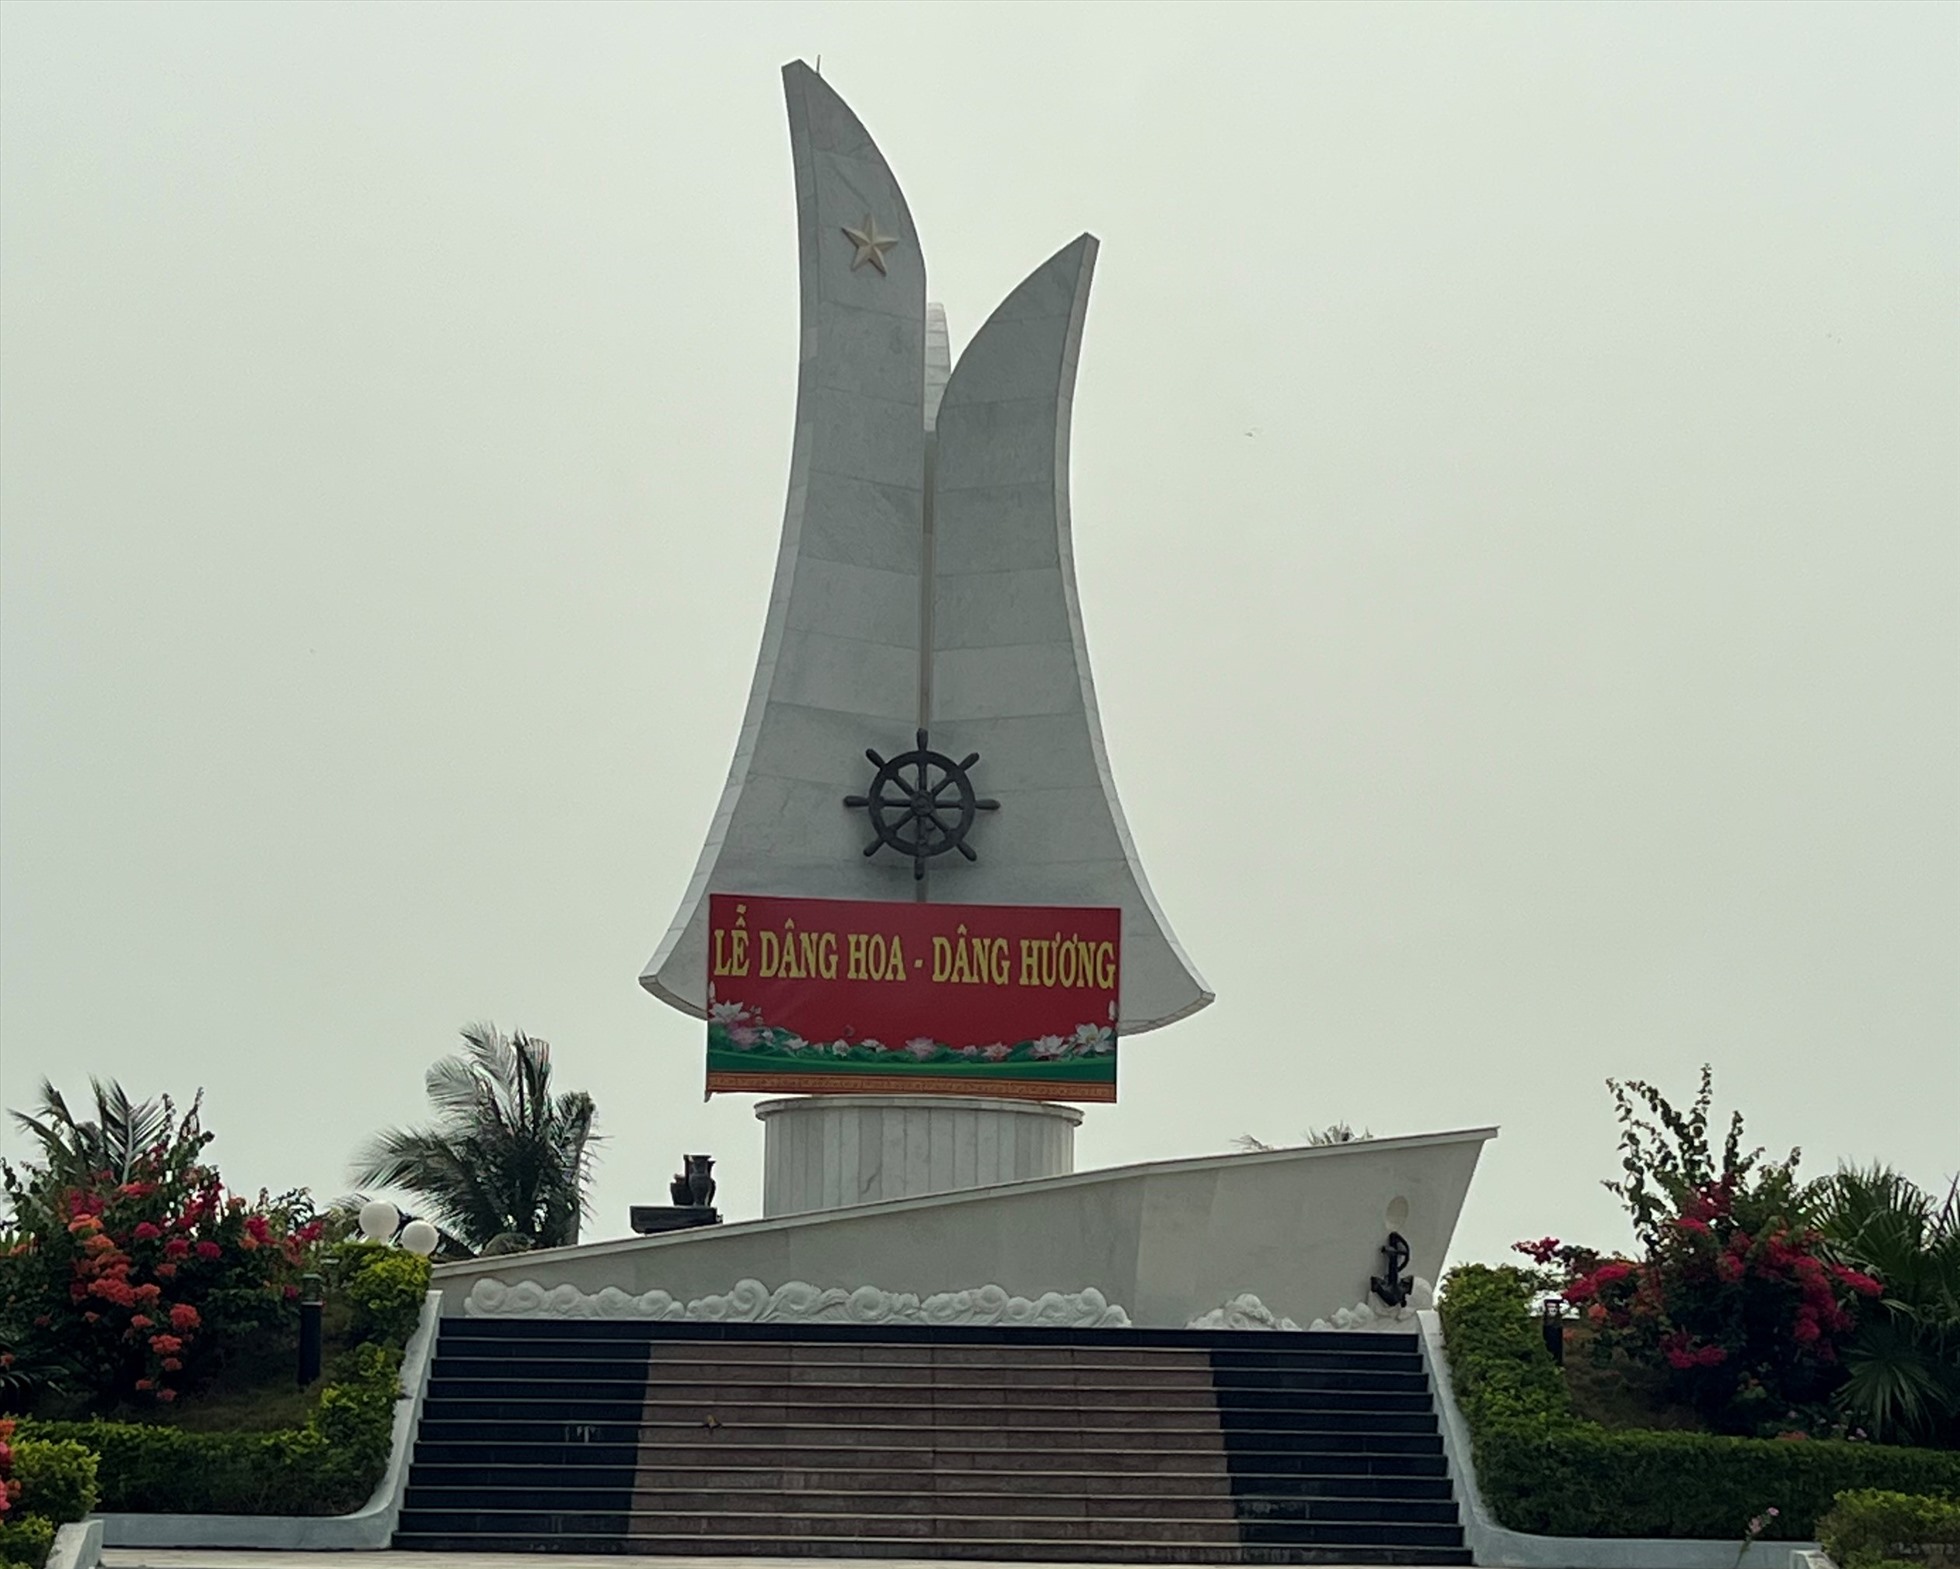 Di tích lịch sử tàu không số trên bãi biển Lộ Diêu. Ảnh: Nguyễn Ngọc.